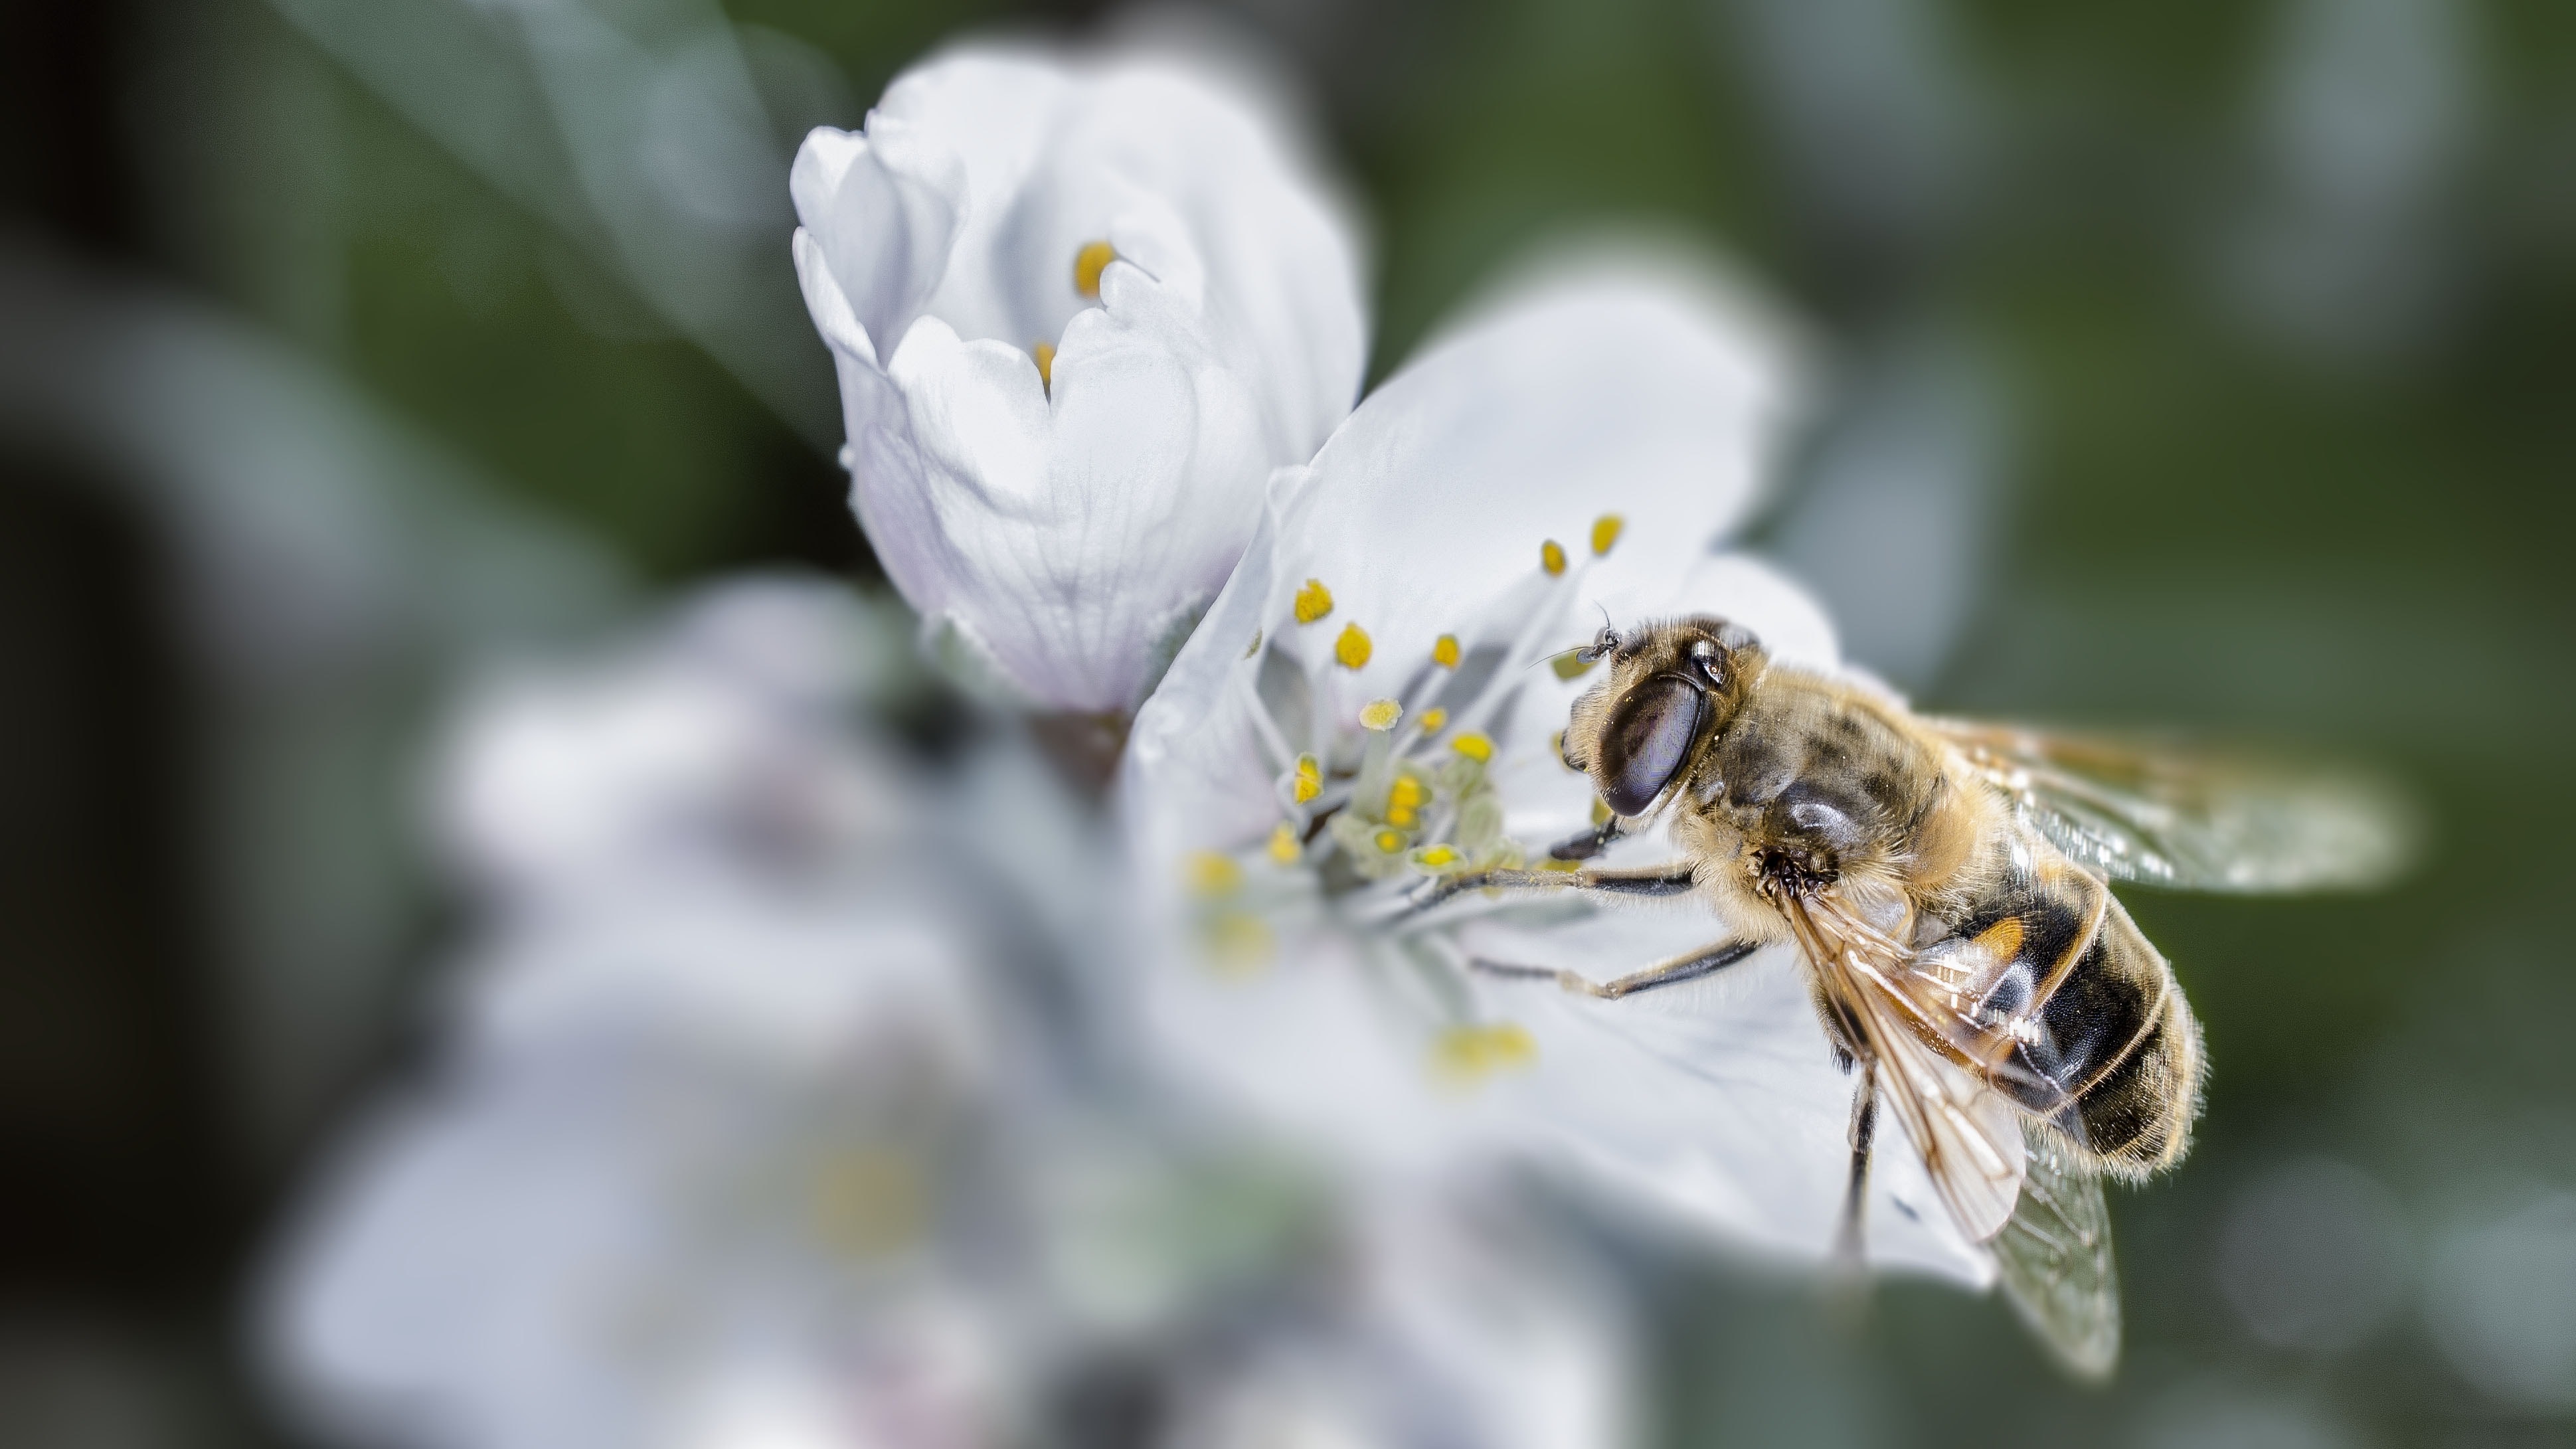 tilt shift lens photography of bee gathering pollen from white petaled flower